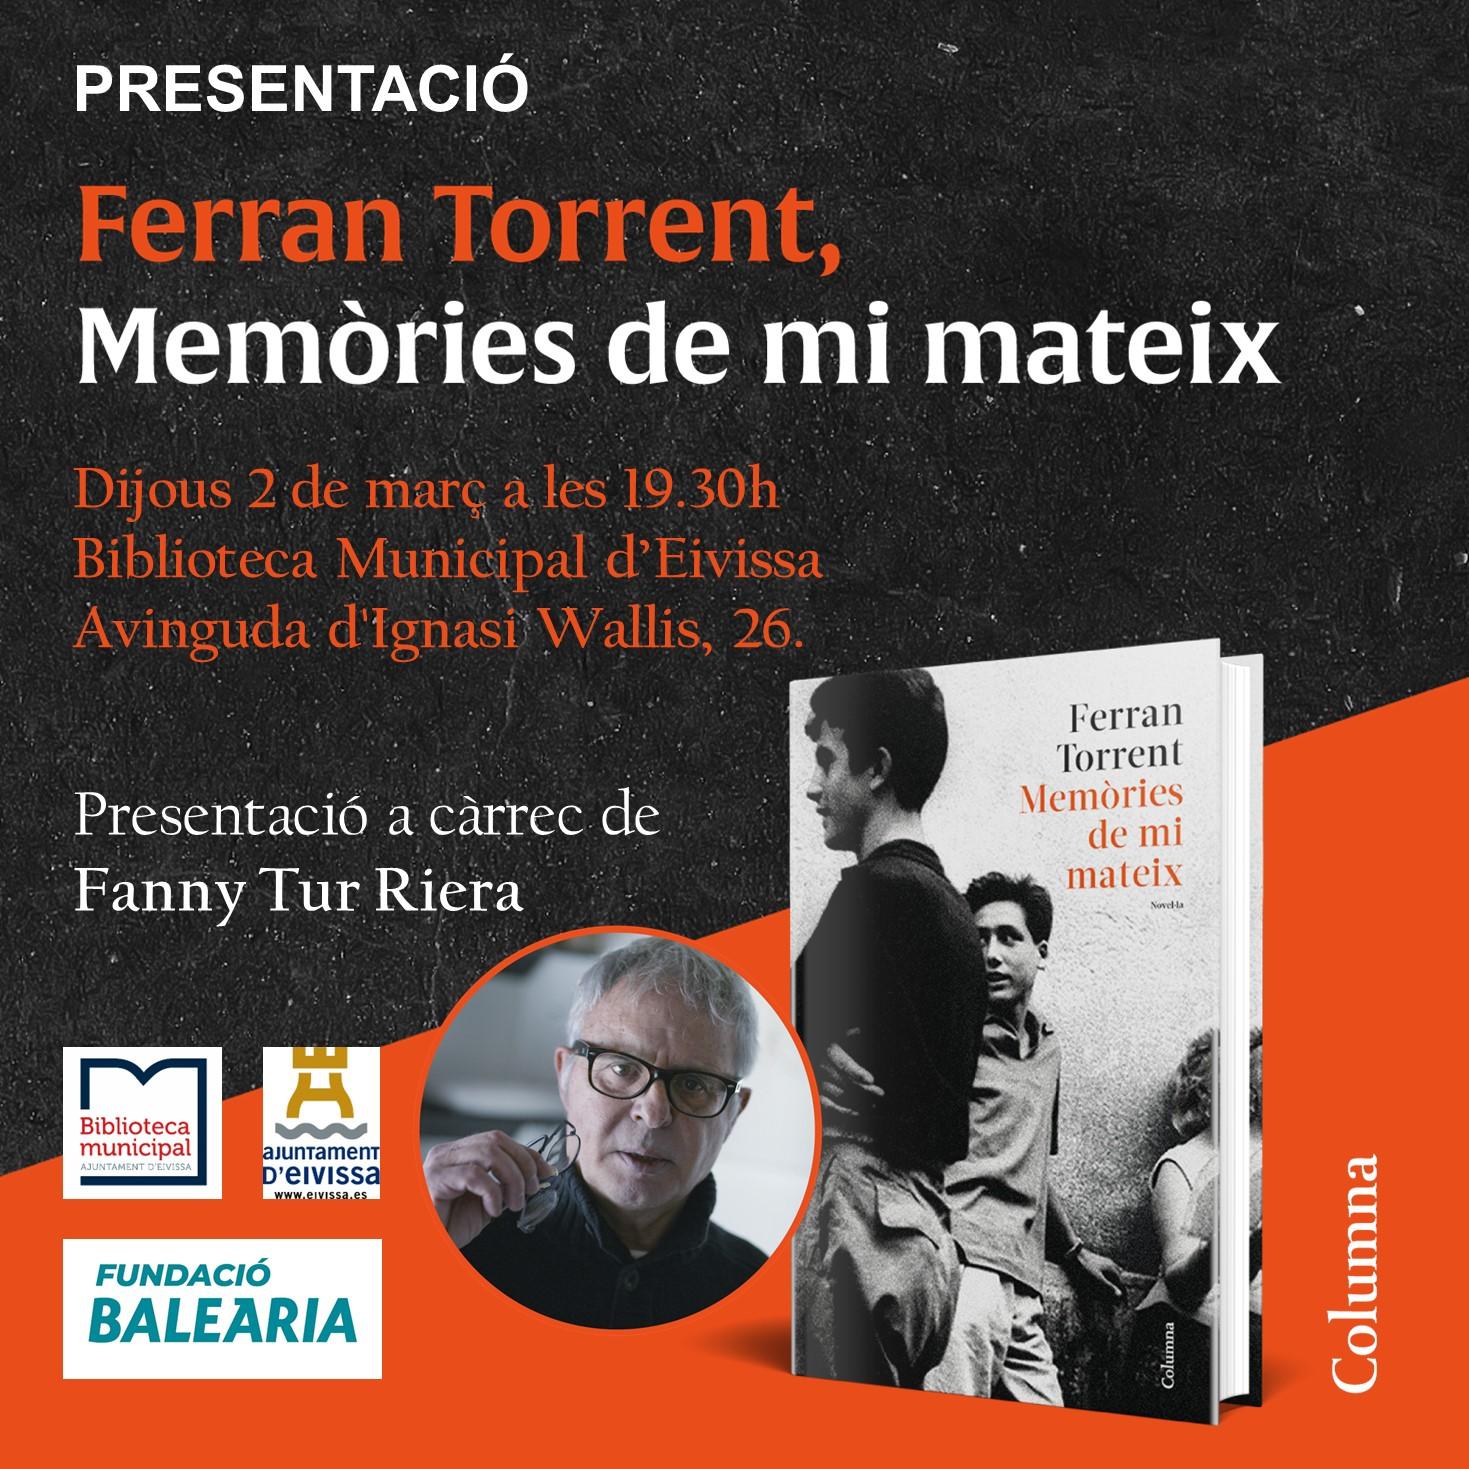 (Català) La Fundació Baleària presenta el llibre ‘Memòries de mi mateix’ de l’autor valencià Ferran Torrent